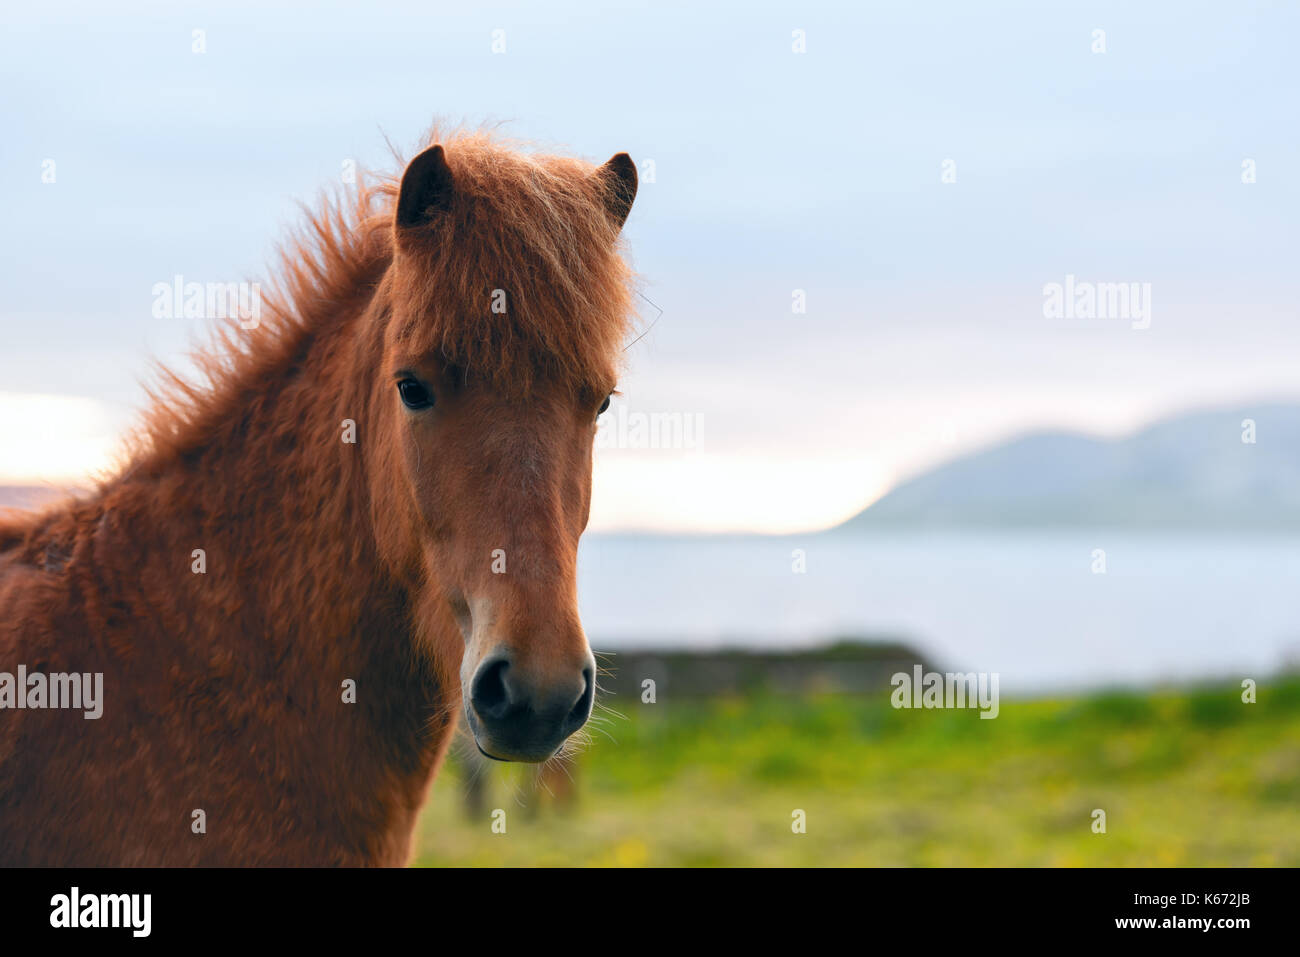 Icelandic horse portrait Stock Photo